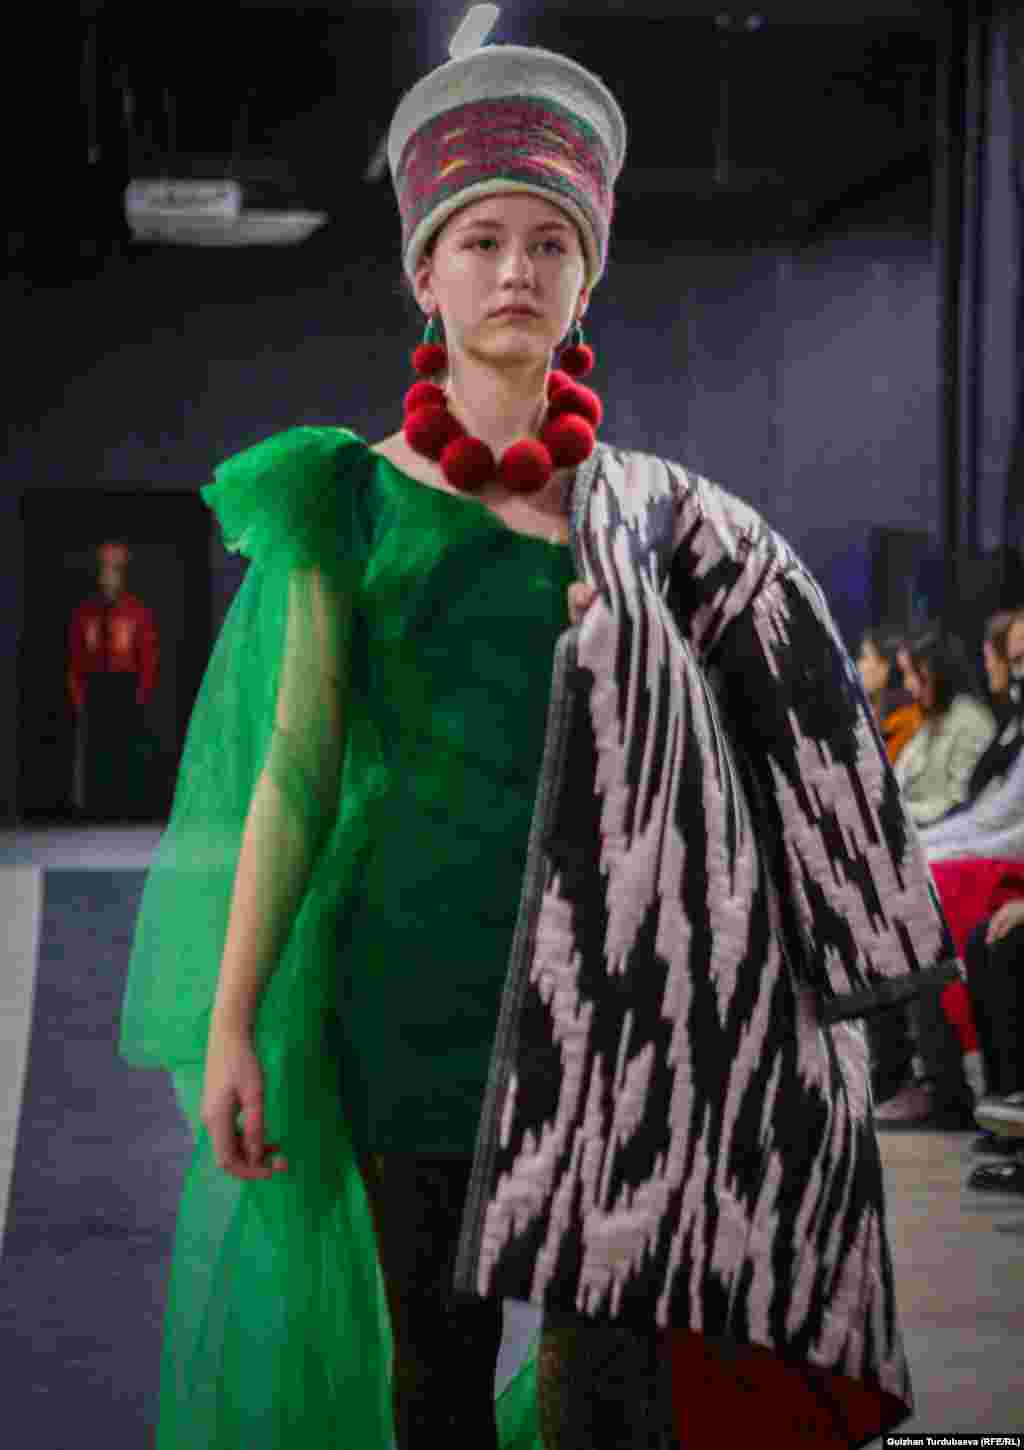 Чолпон Антонисес создала образ из атласного чапана и зеленого платья. Образ дополнен головным убором, напоминающим кыргызский элечек, на шее модели - крупные войлочные бусы насыщенно-красного цвета.